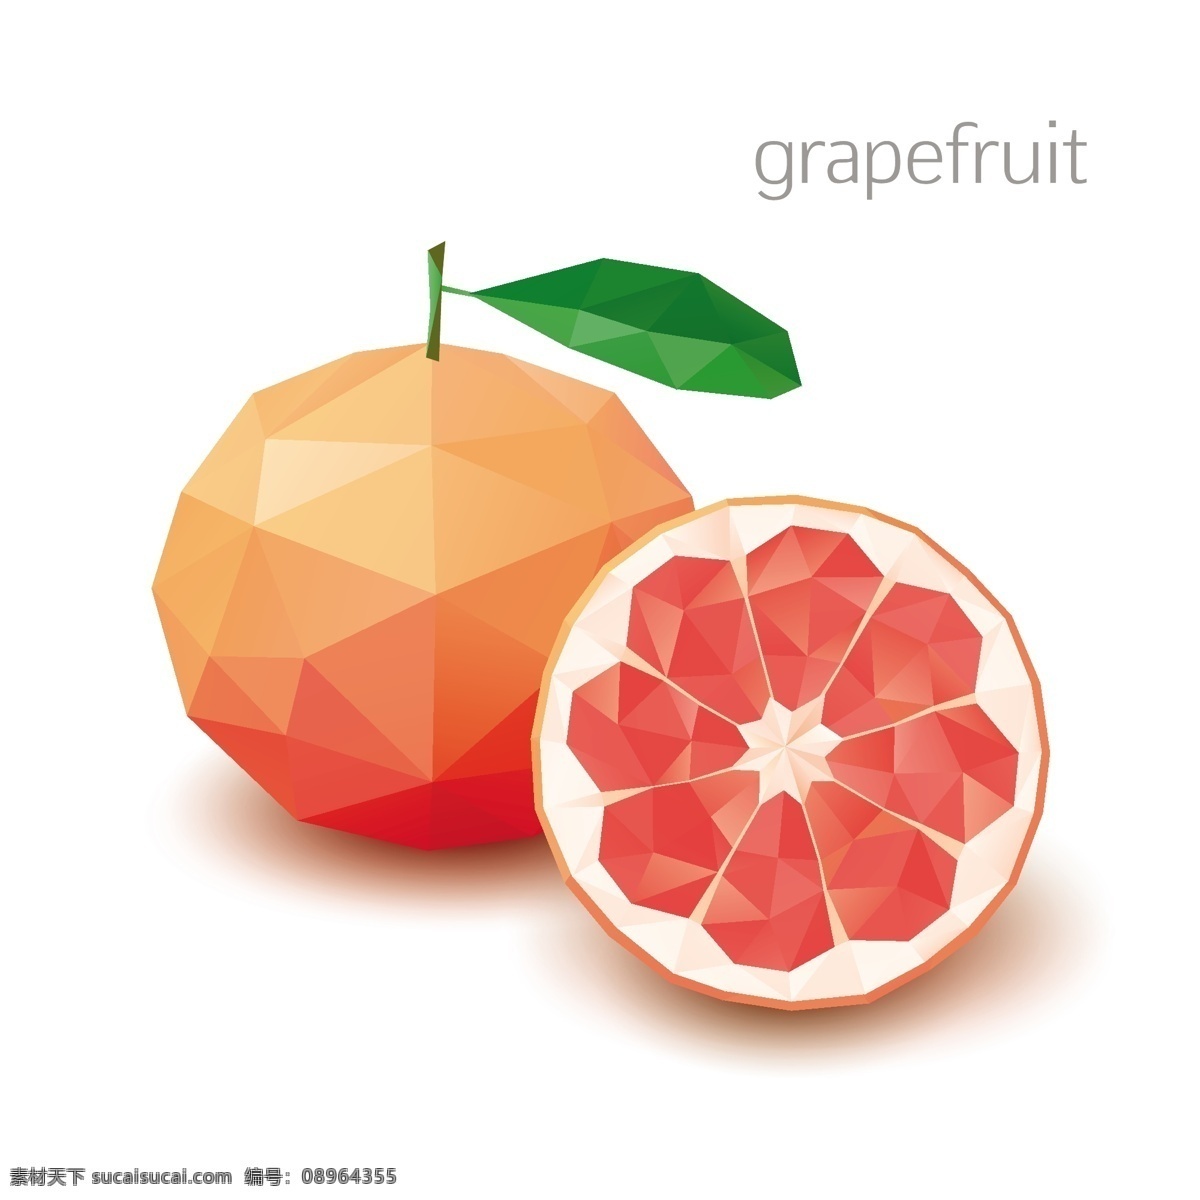 马赛克水果 水果 西柚 像素化 几何图案 创意设计 马赛克背景 三角形 多边形 不规则图案 卡通背景 抽象背景 生物世界 矢量